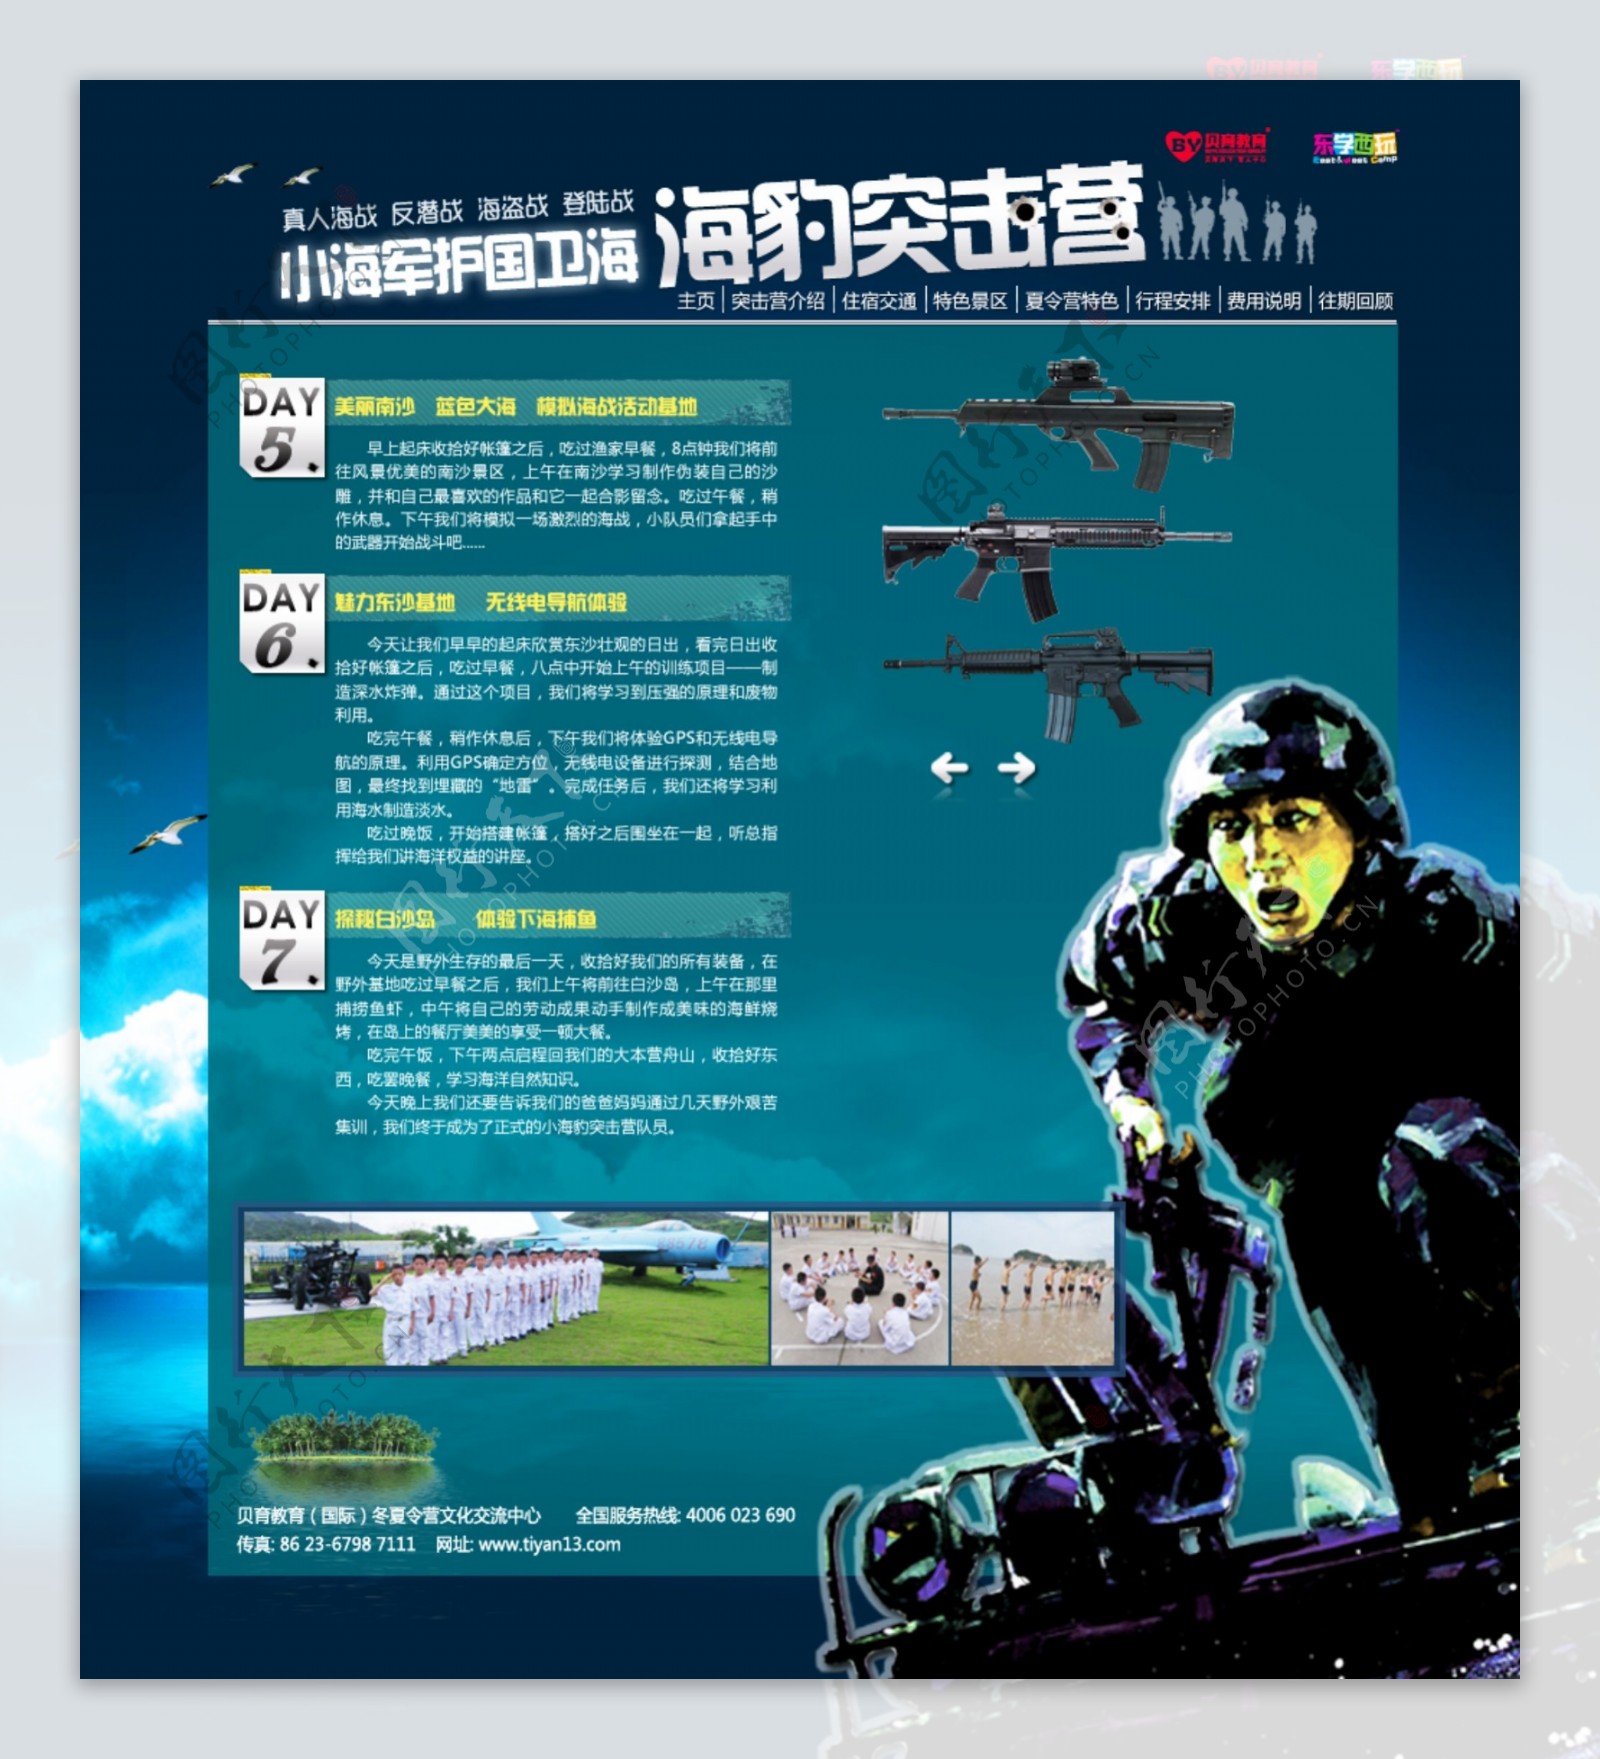 海豹突击军事夏令营网页设计模板图片